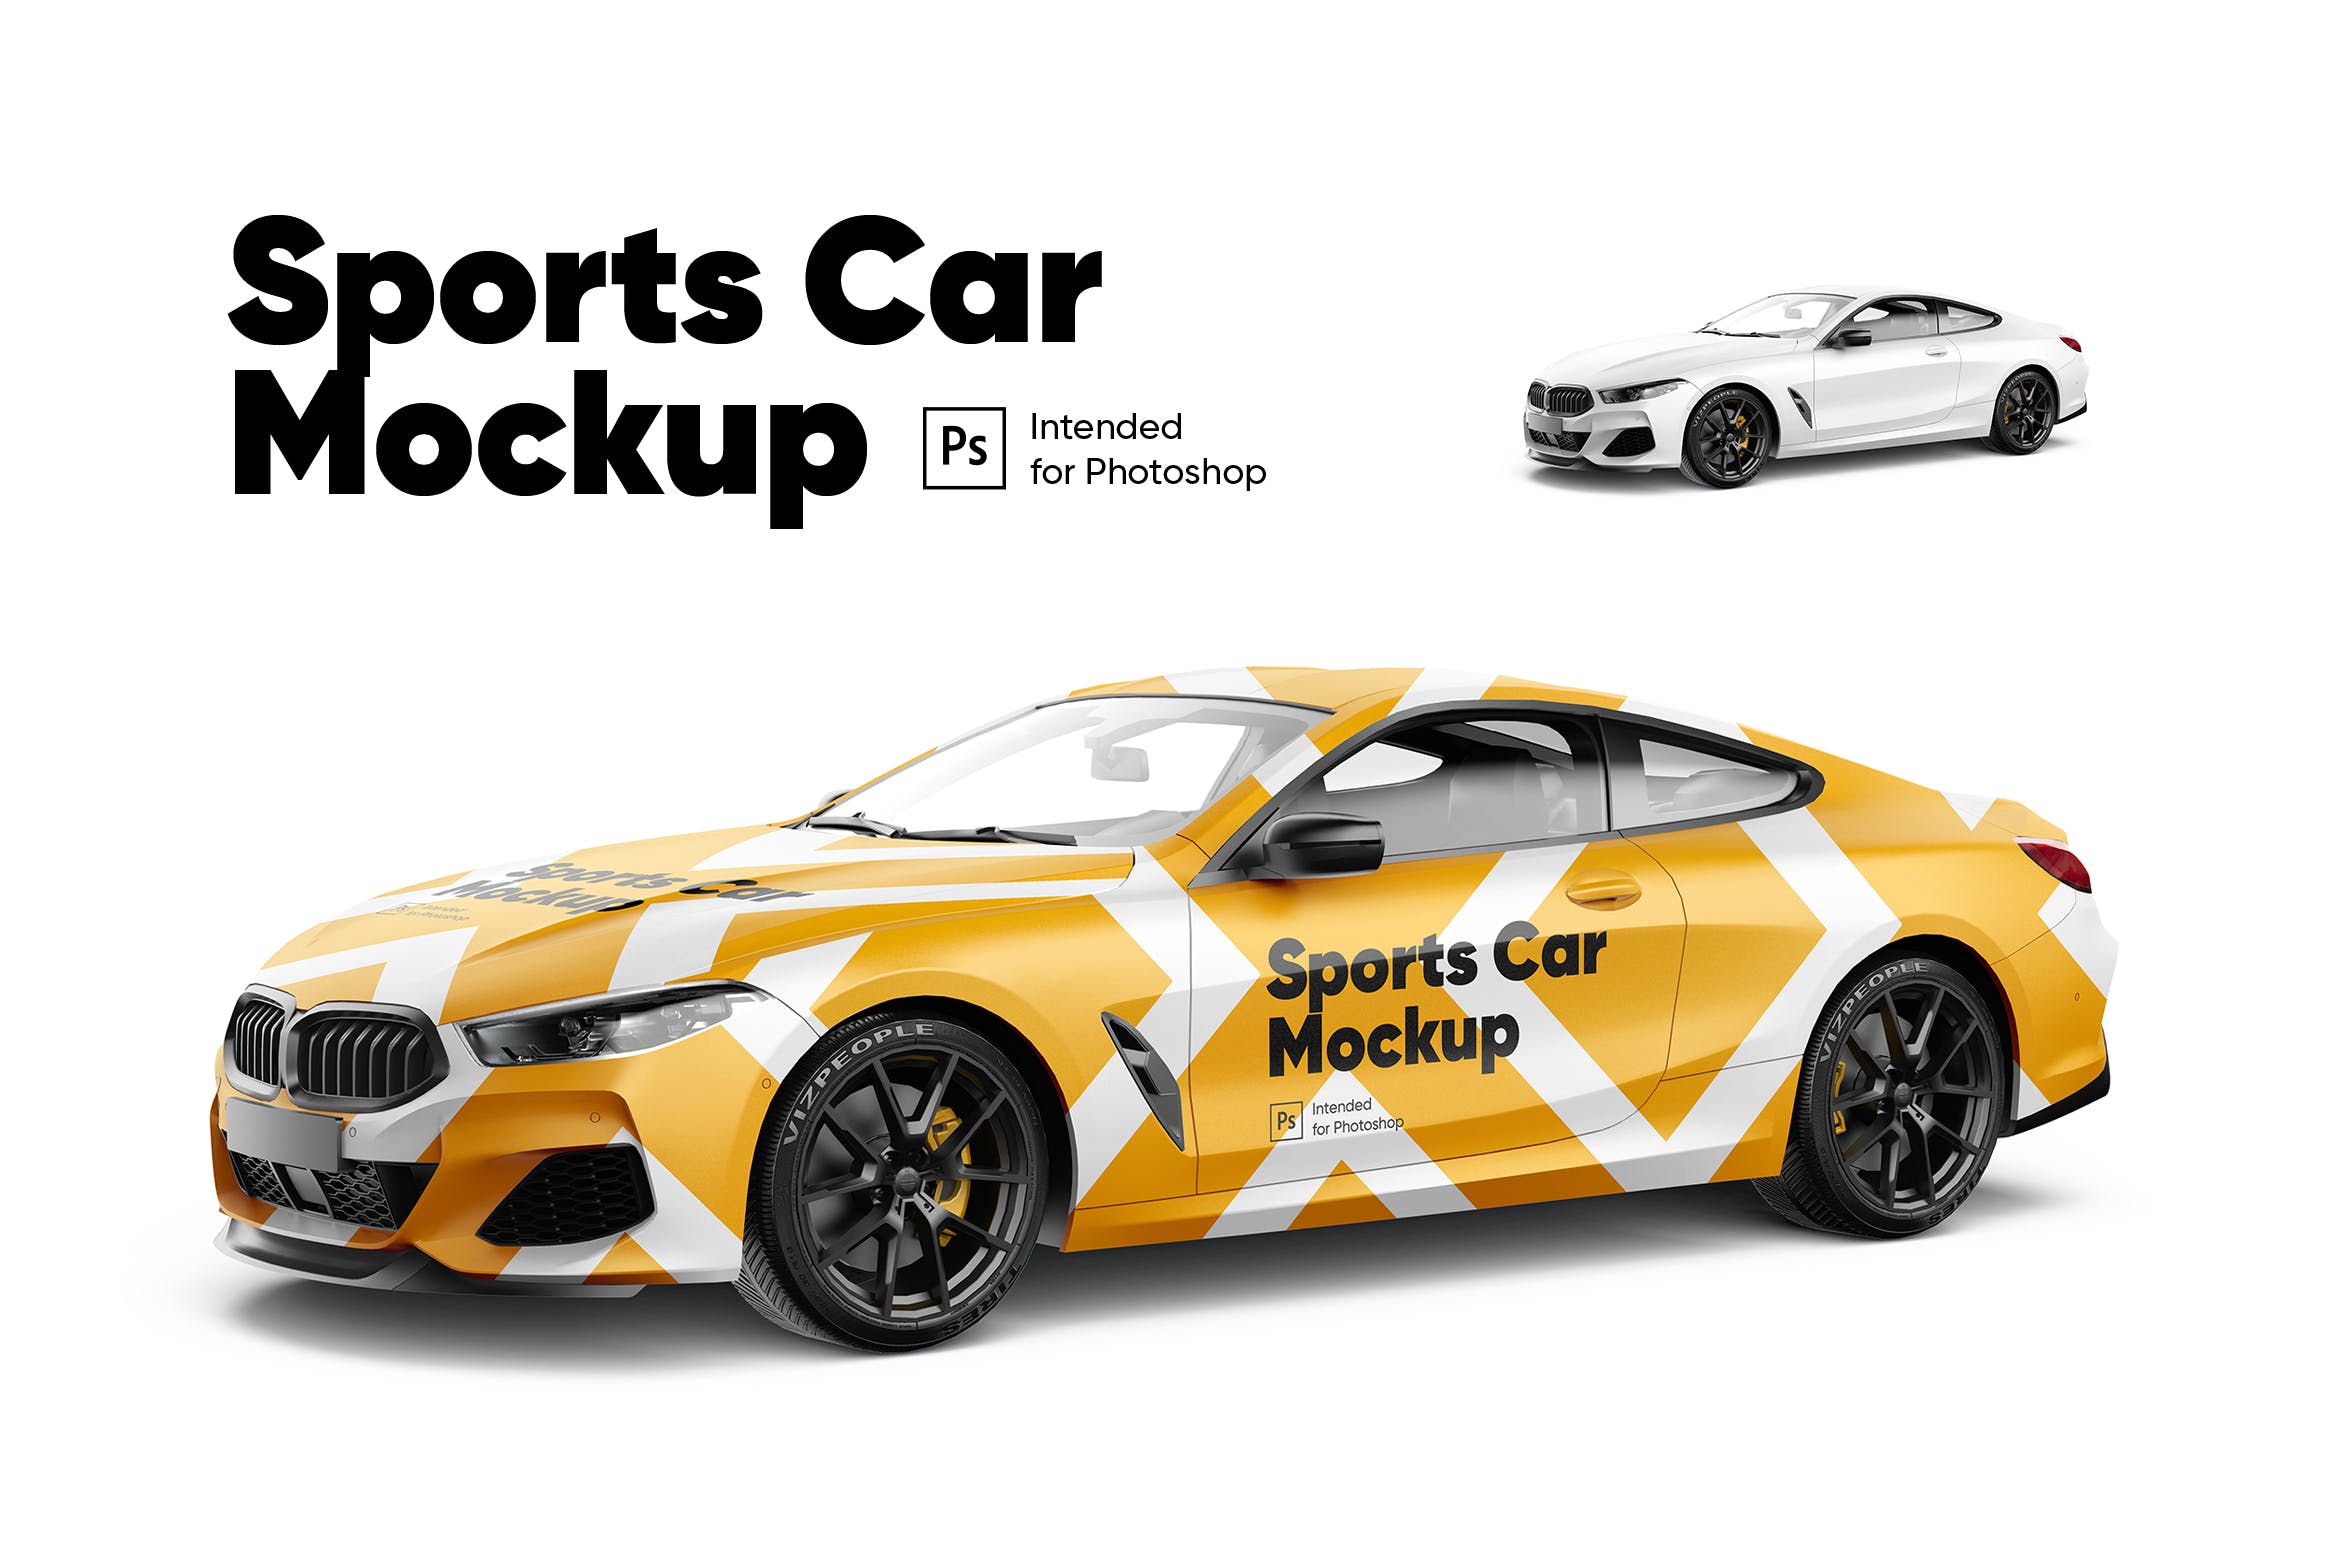 车身广告宝马轿跑设计样机模板 Sports Car Mockup设计素材模板